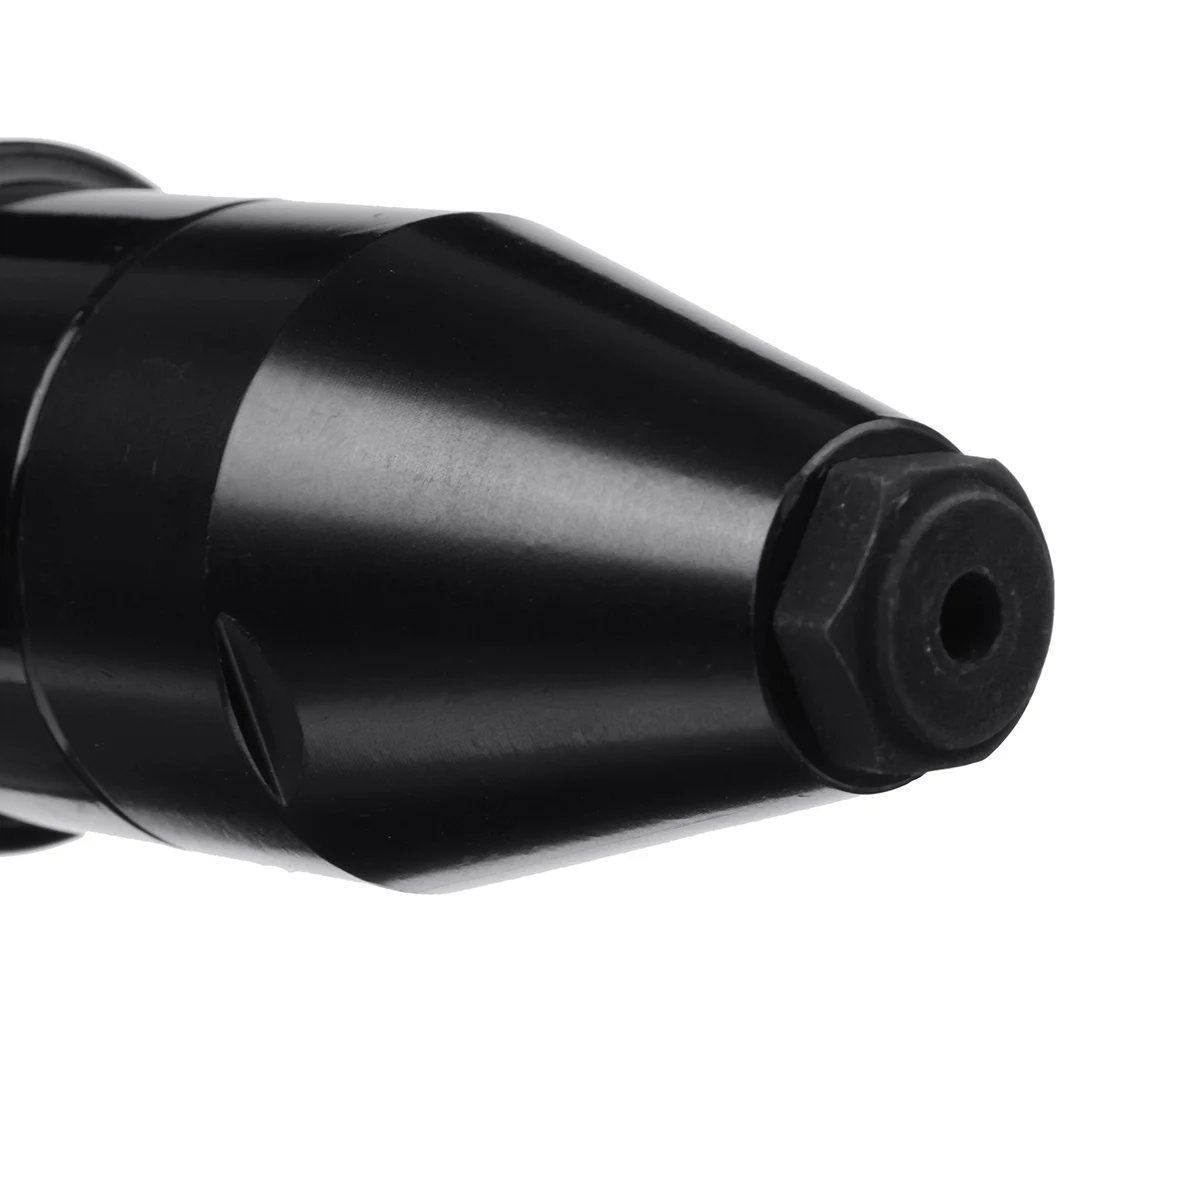 Pistola remachadora eléctrica inalámbrica, destornillador remachador ciego portátil de 3,2mm-4,8mm, tuerca remachadora recargable para batería Makita de 18V